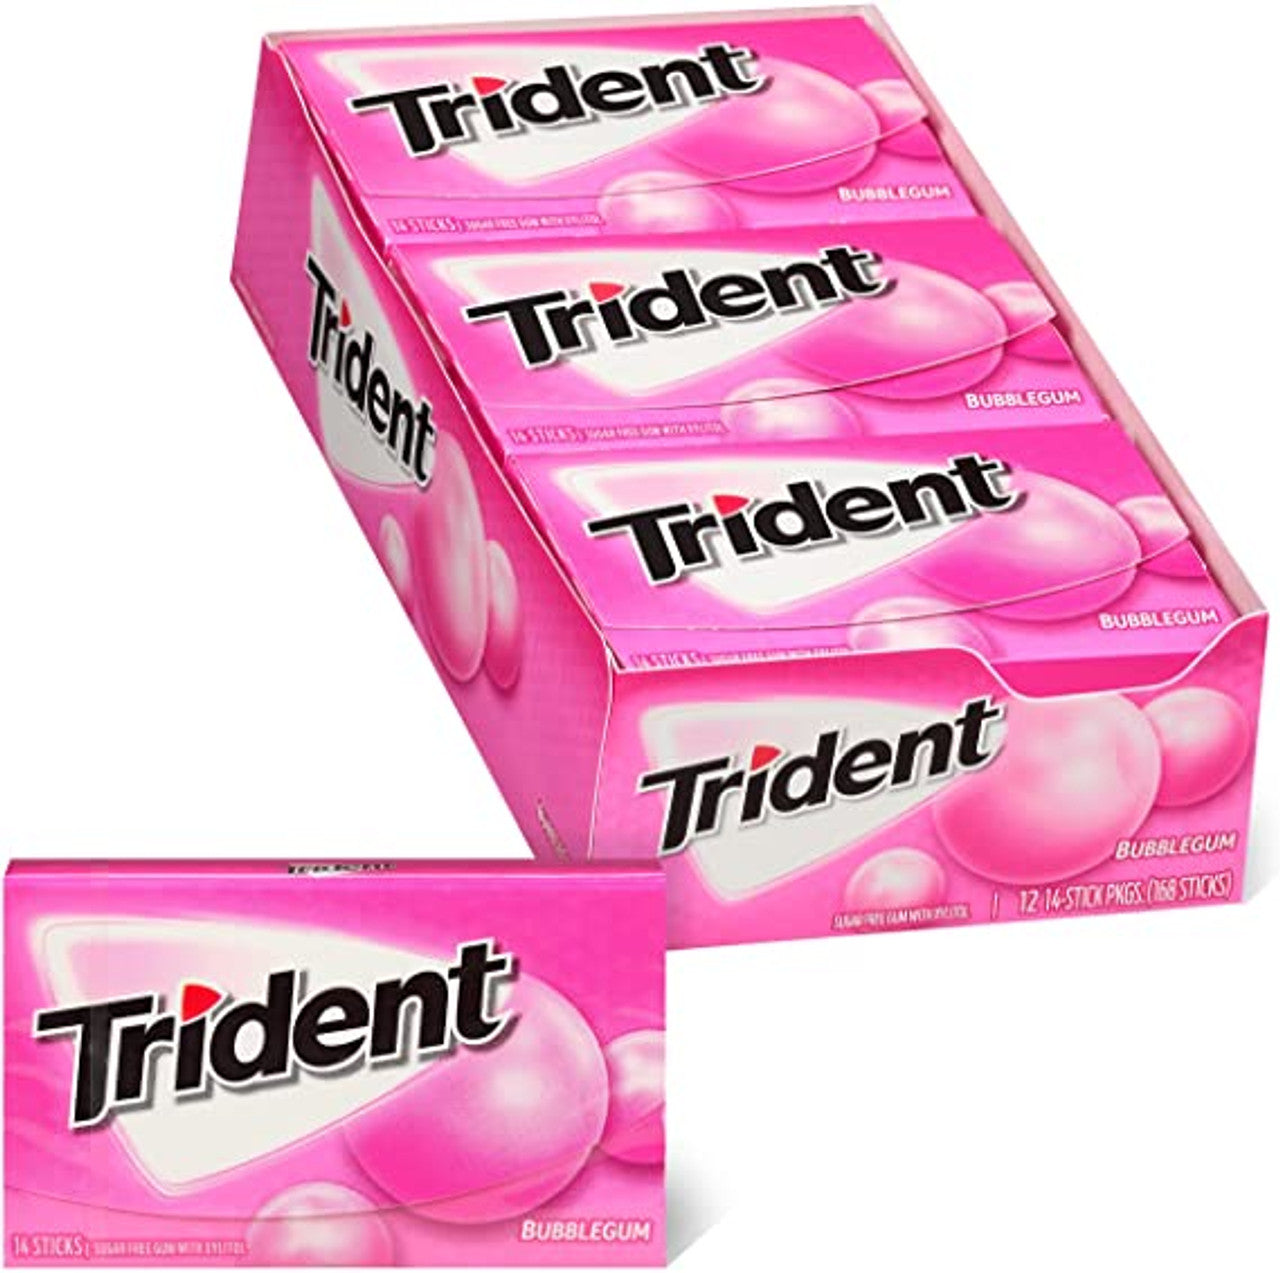 Trident - Sugar Free Gum - 12 Packs x 14 Pieces (168 Total Pieces) - Bubble Gum